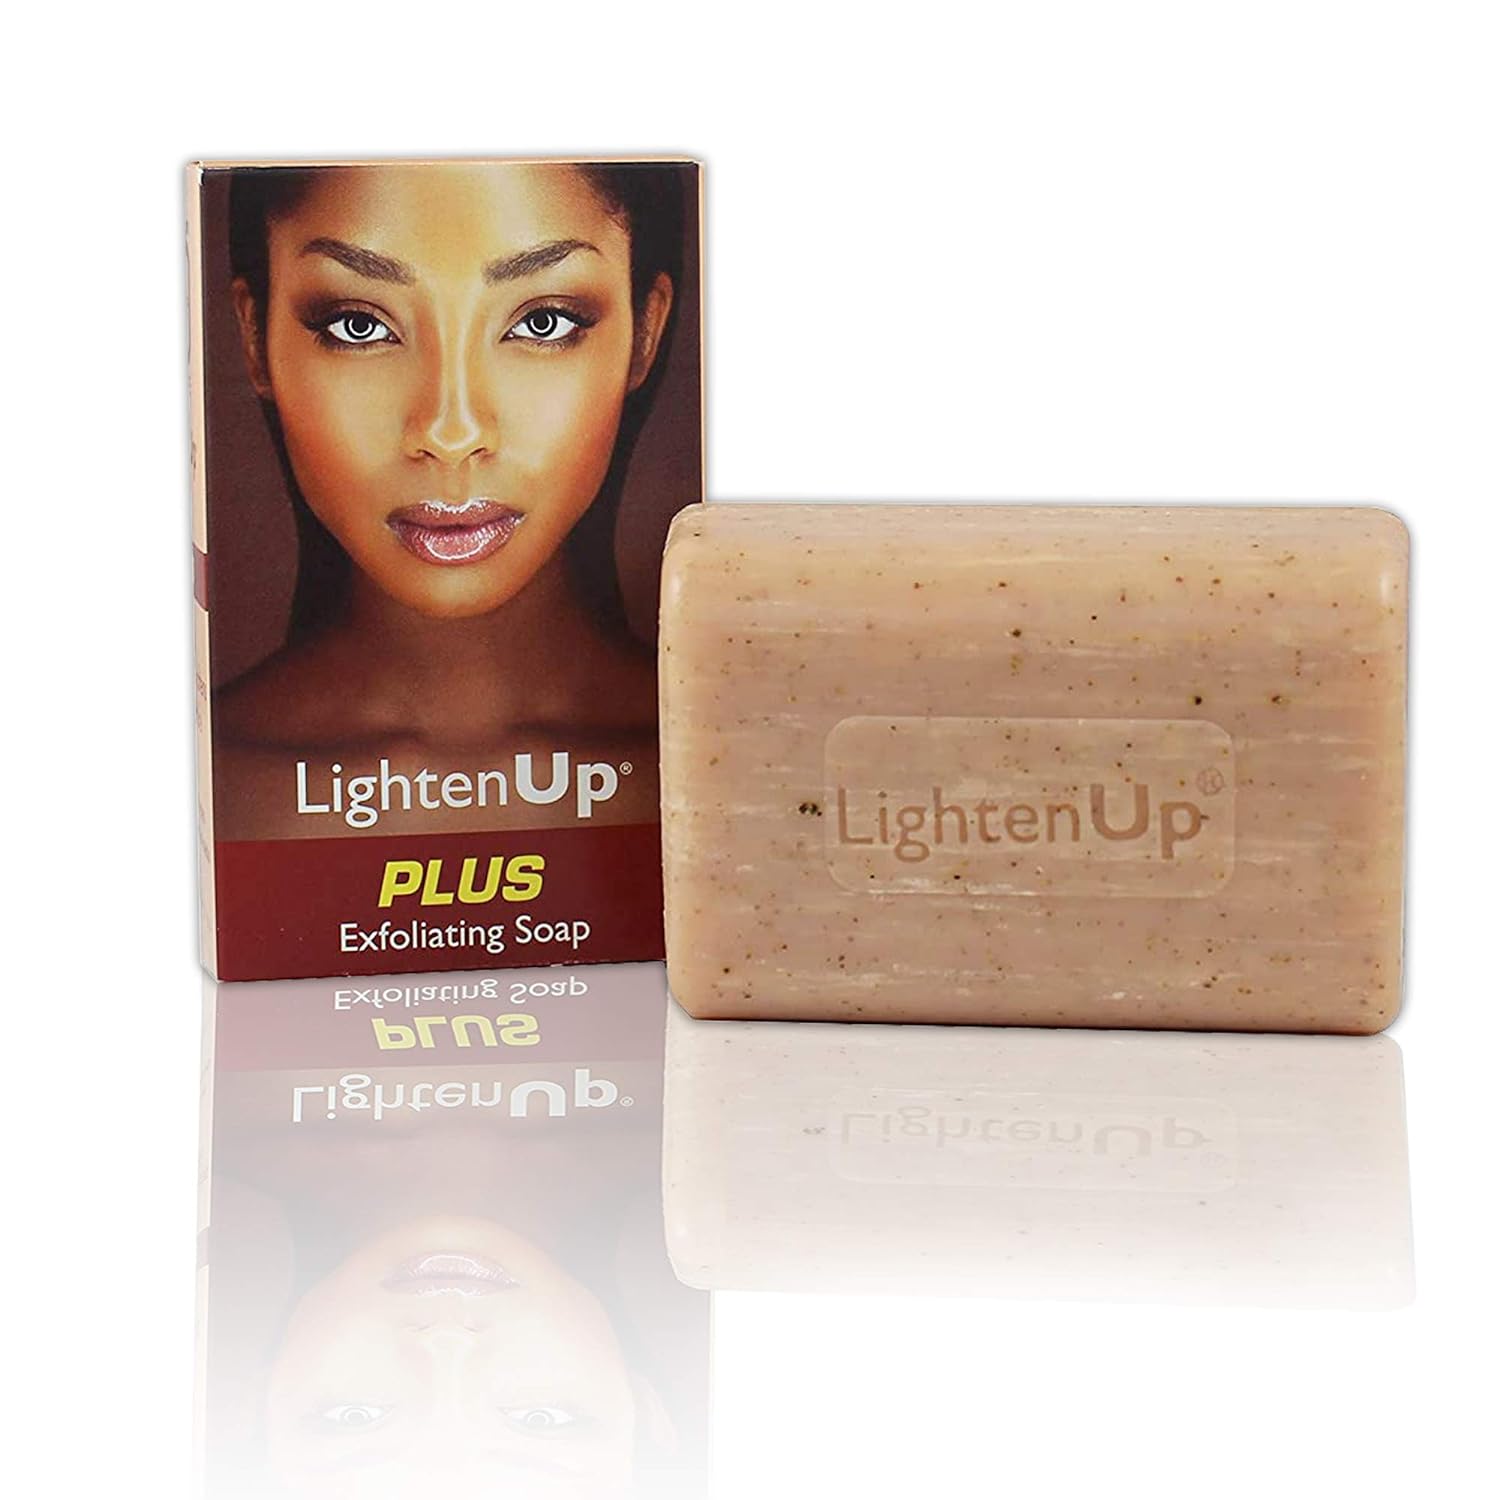 Lighten up Plus Exfoliating Soap